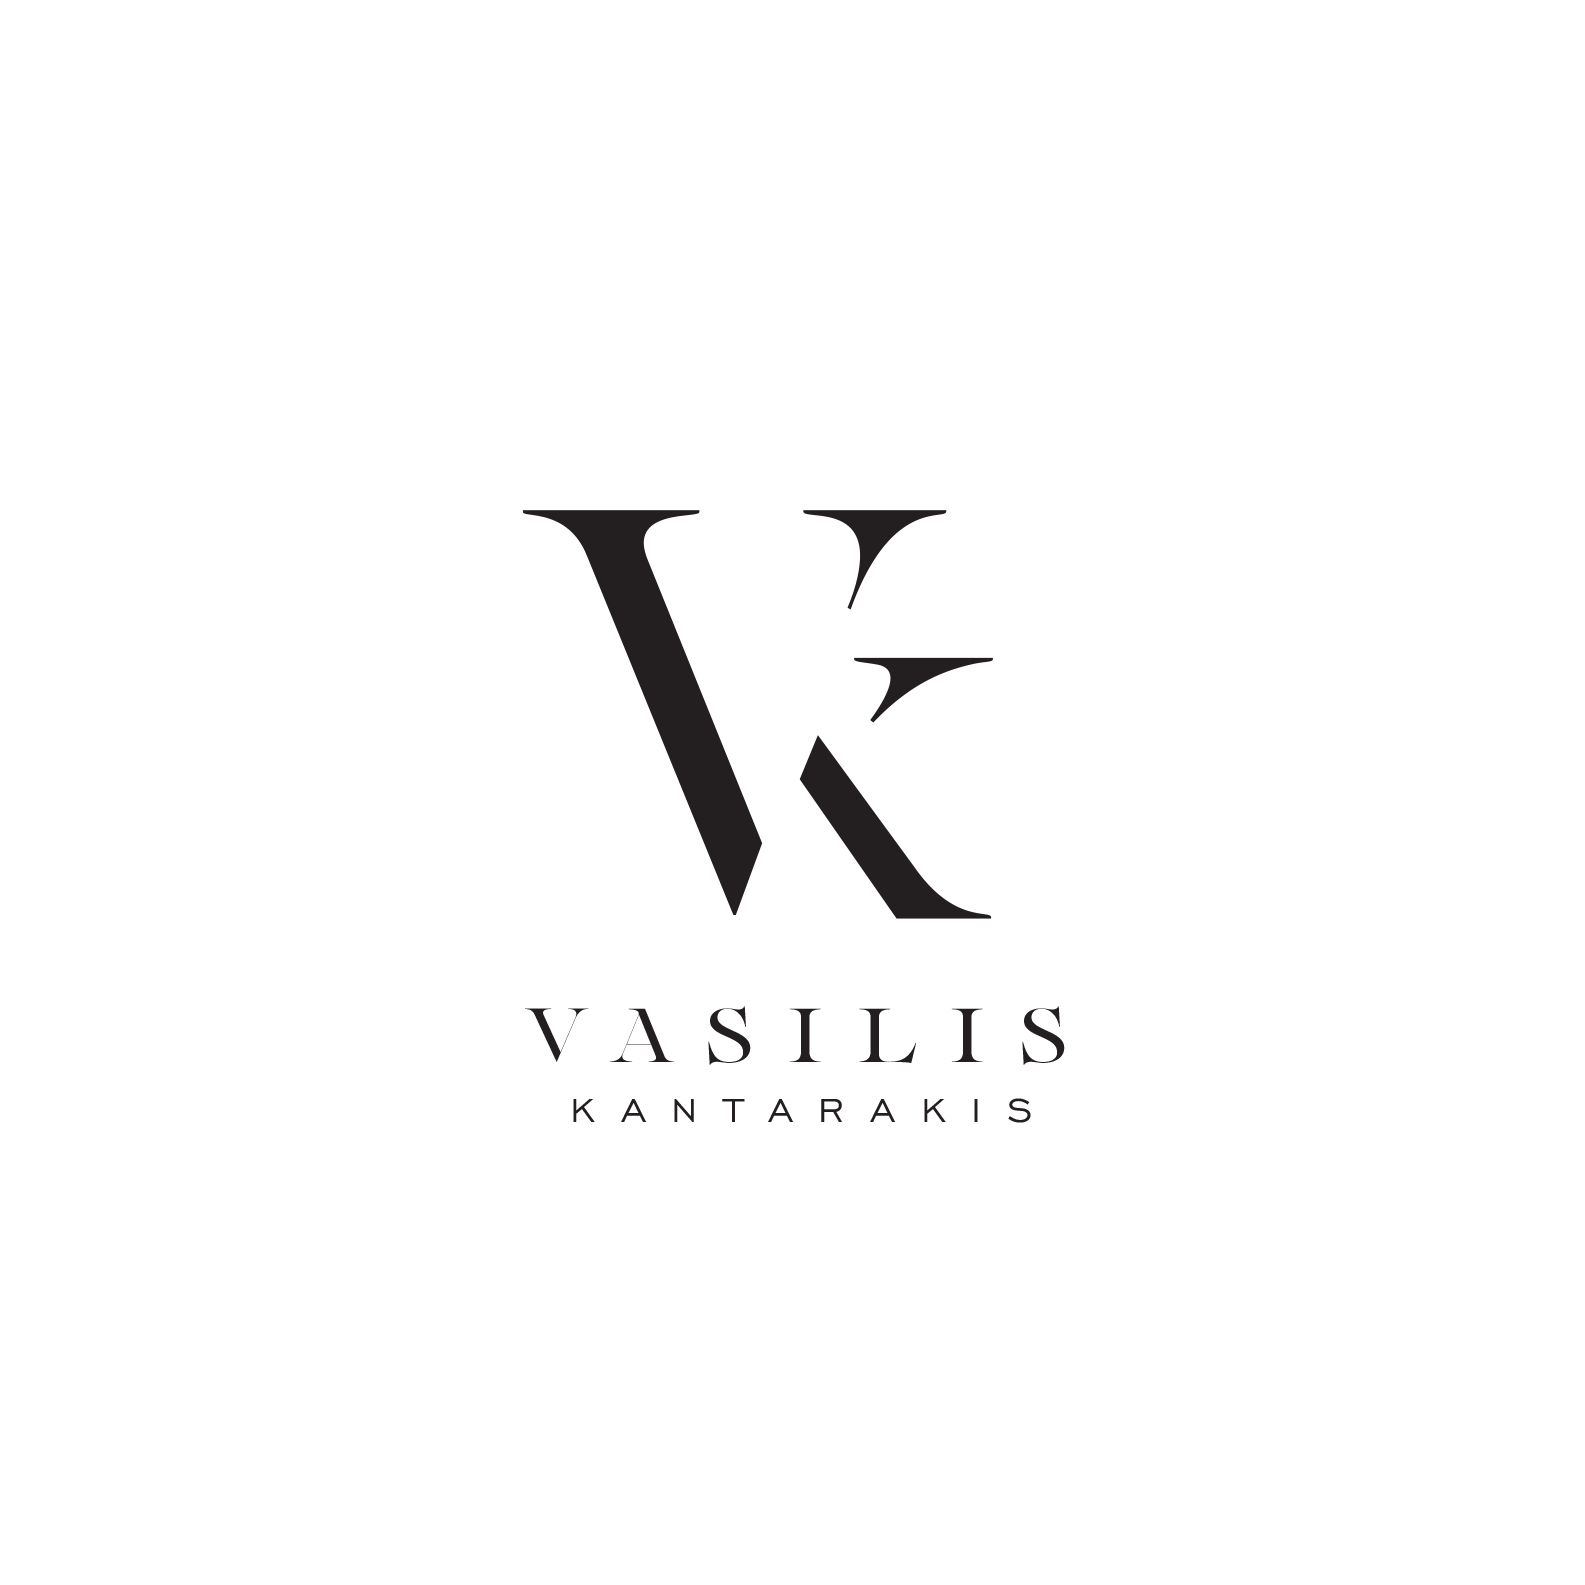 Vasilis Kantarakis Films